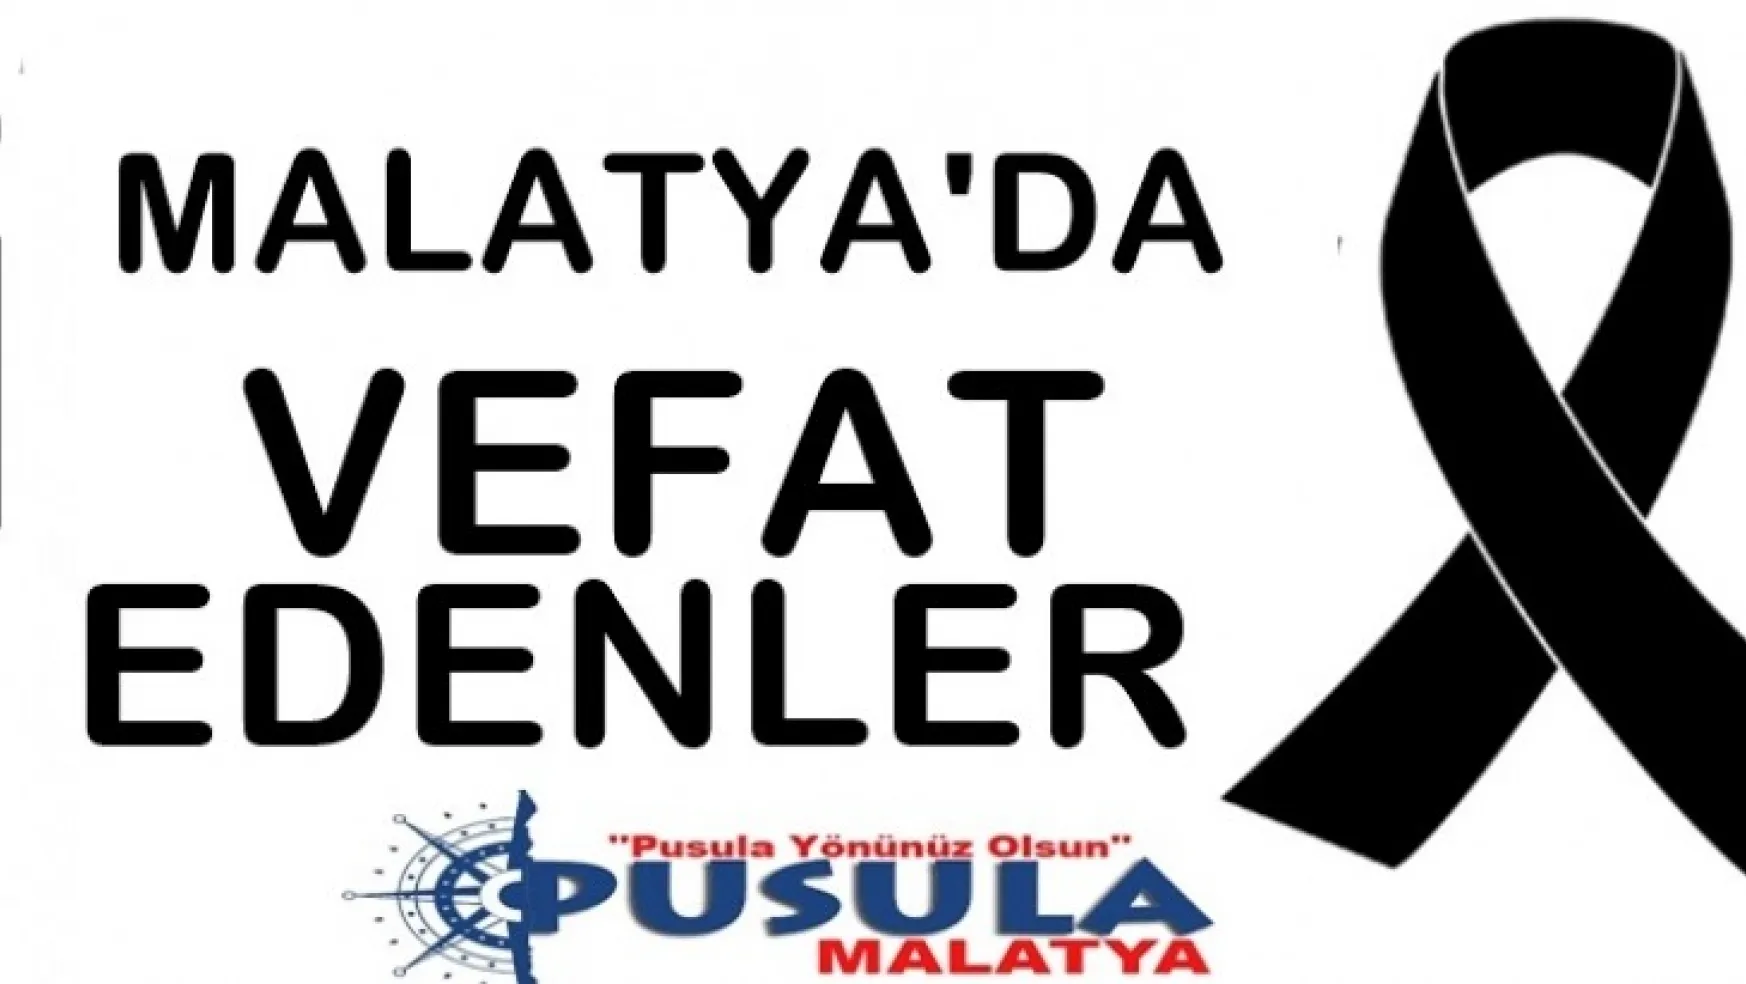 Malatya'da 14 Kişi Vefat etti